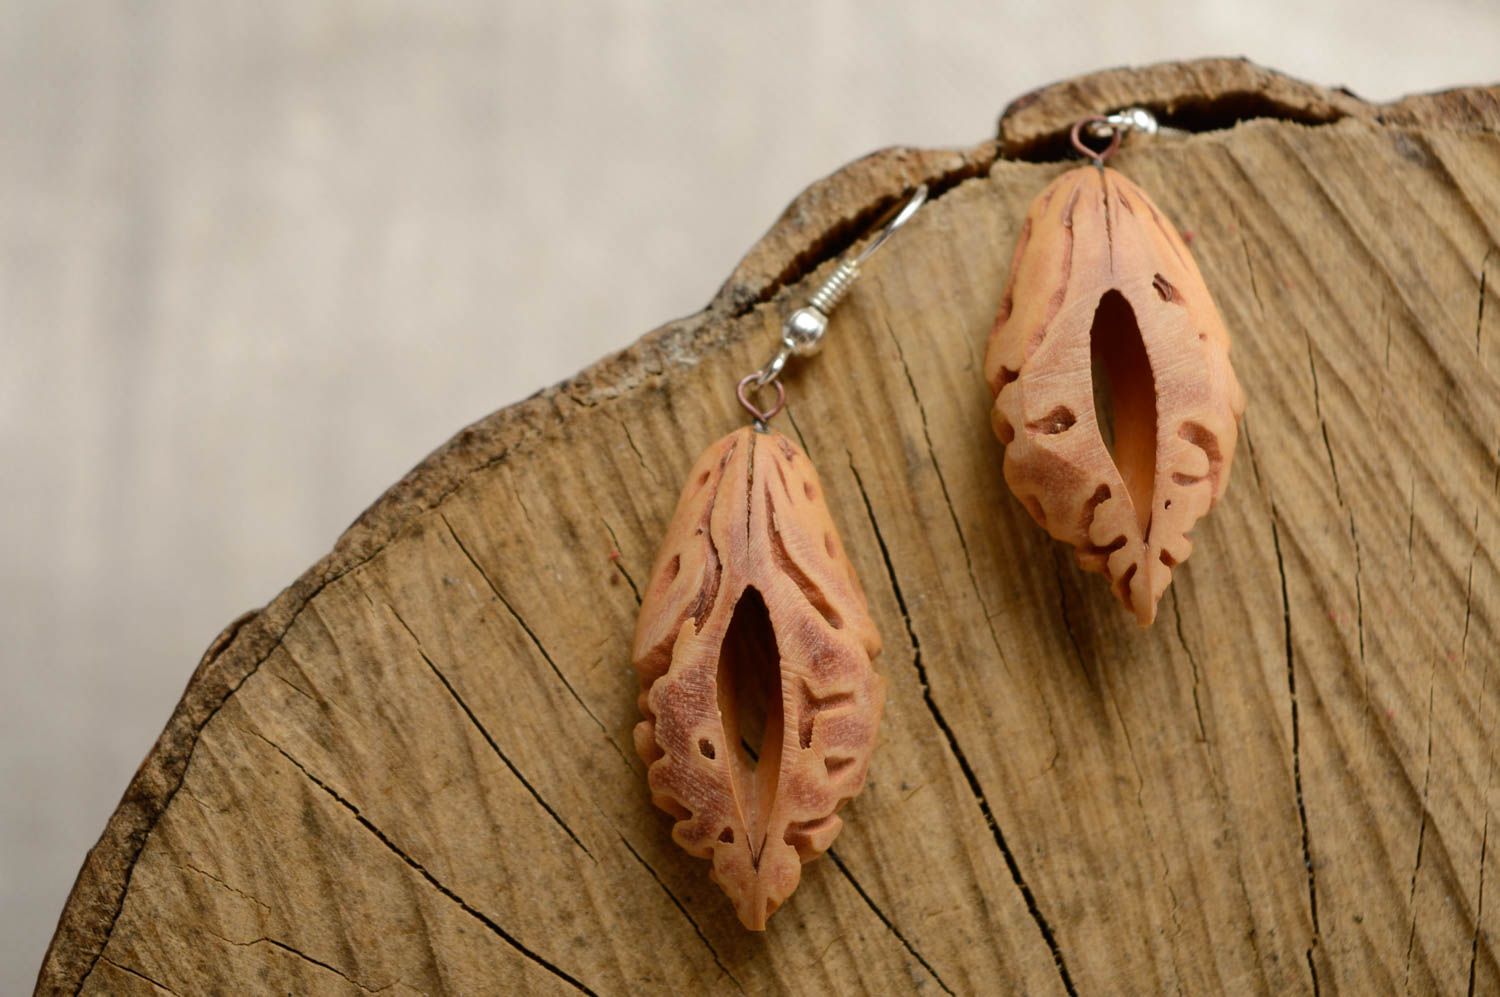 Handmade apricot kernel dangle earrings photo 1